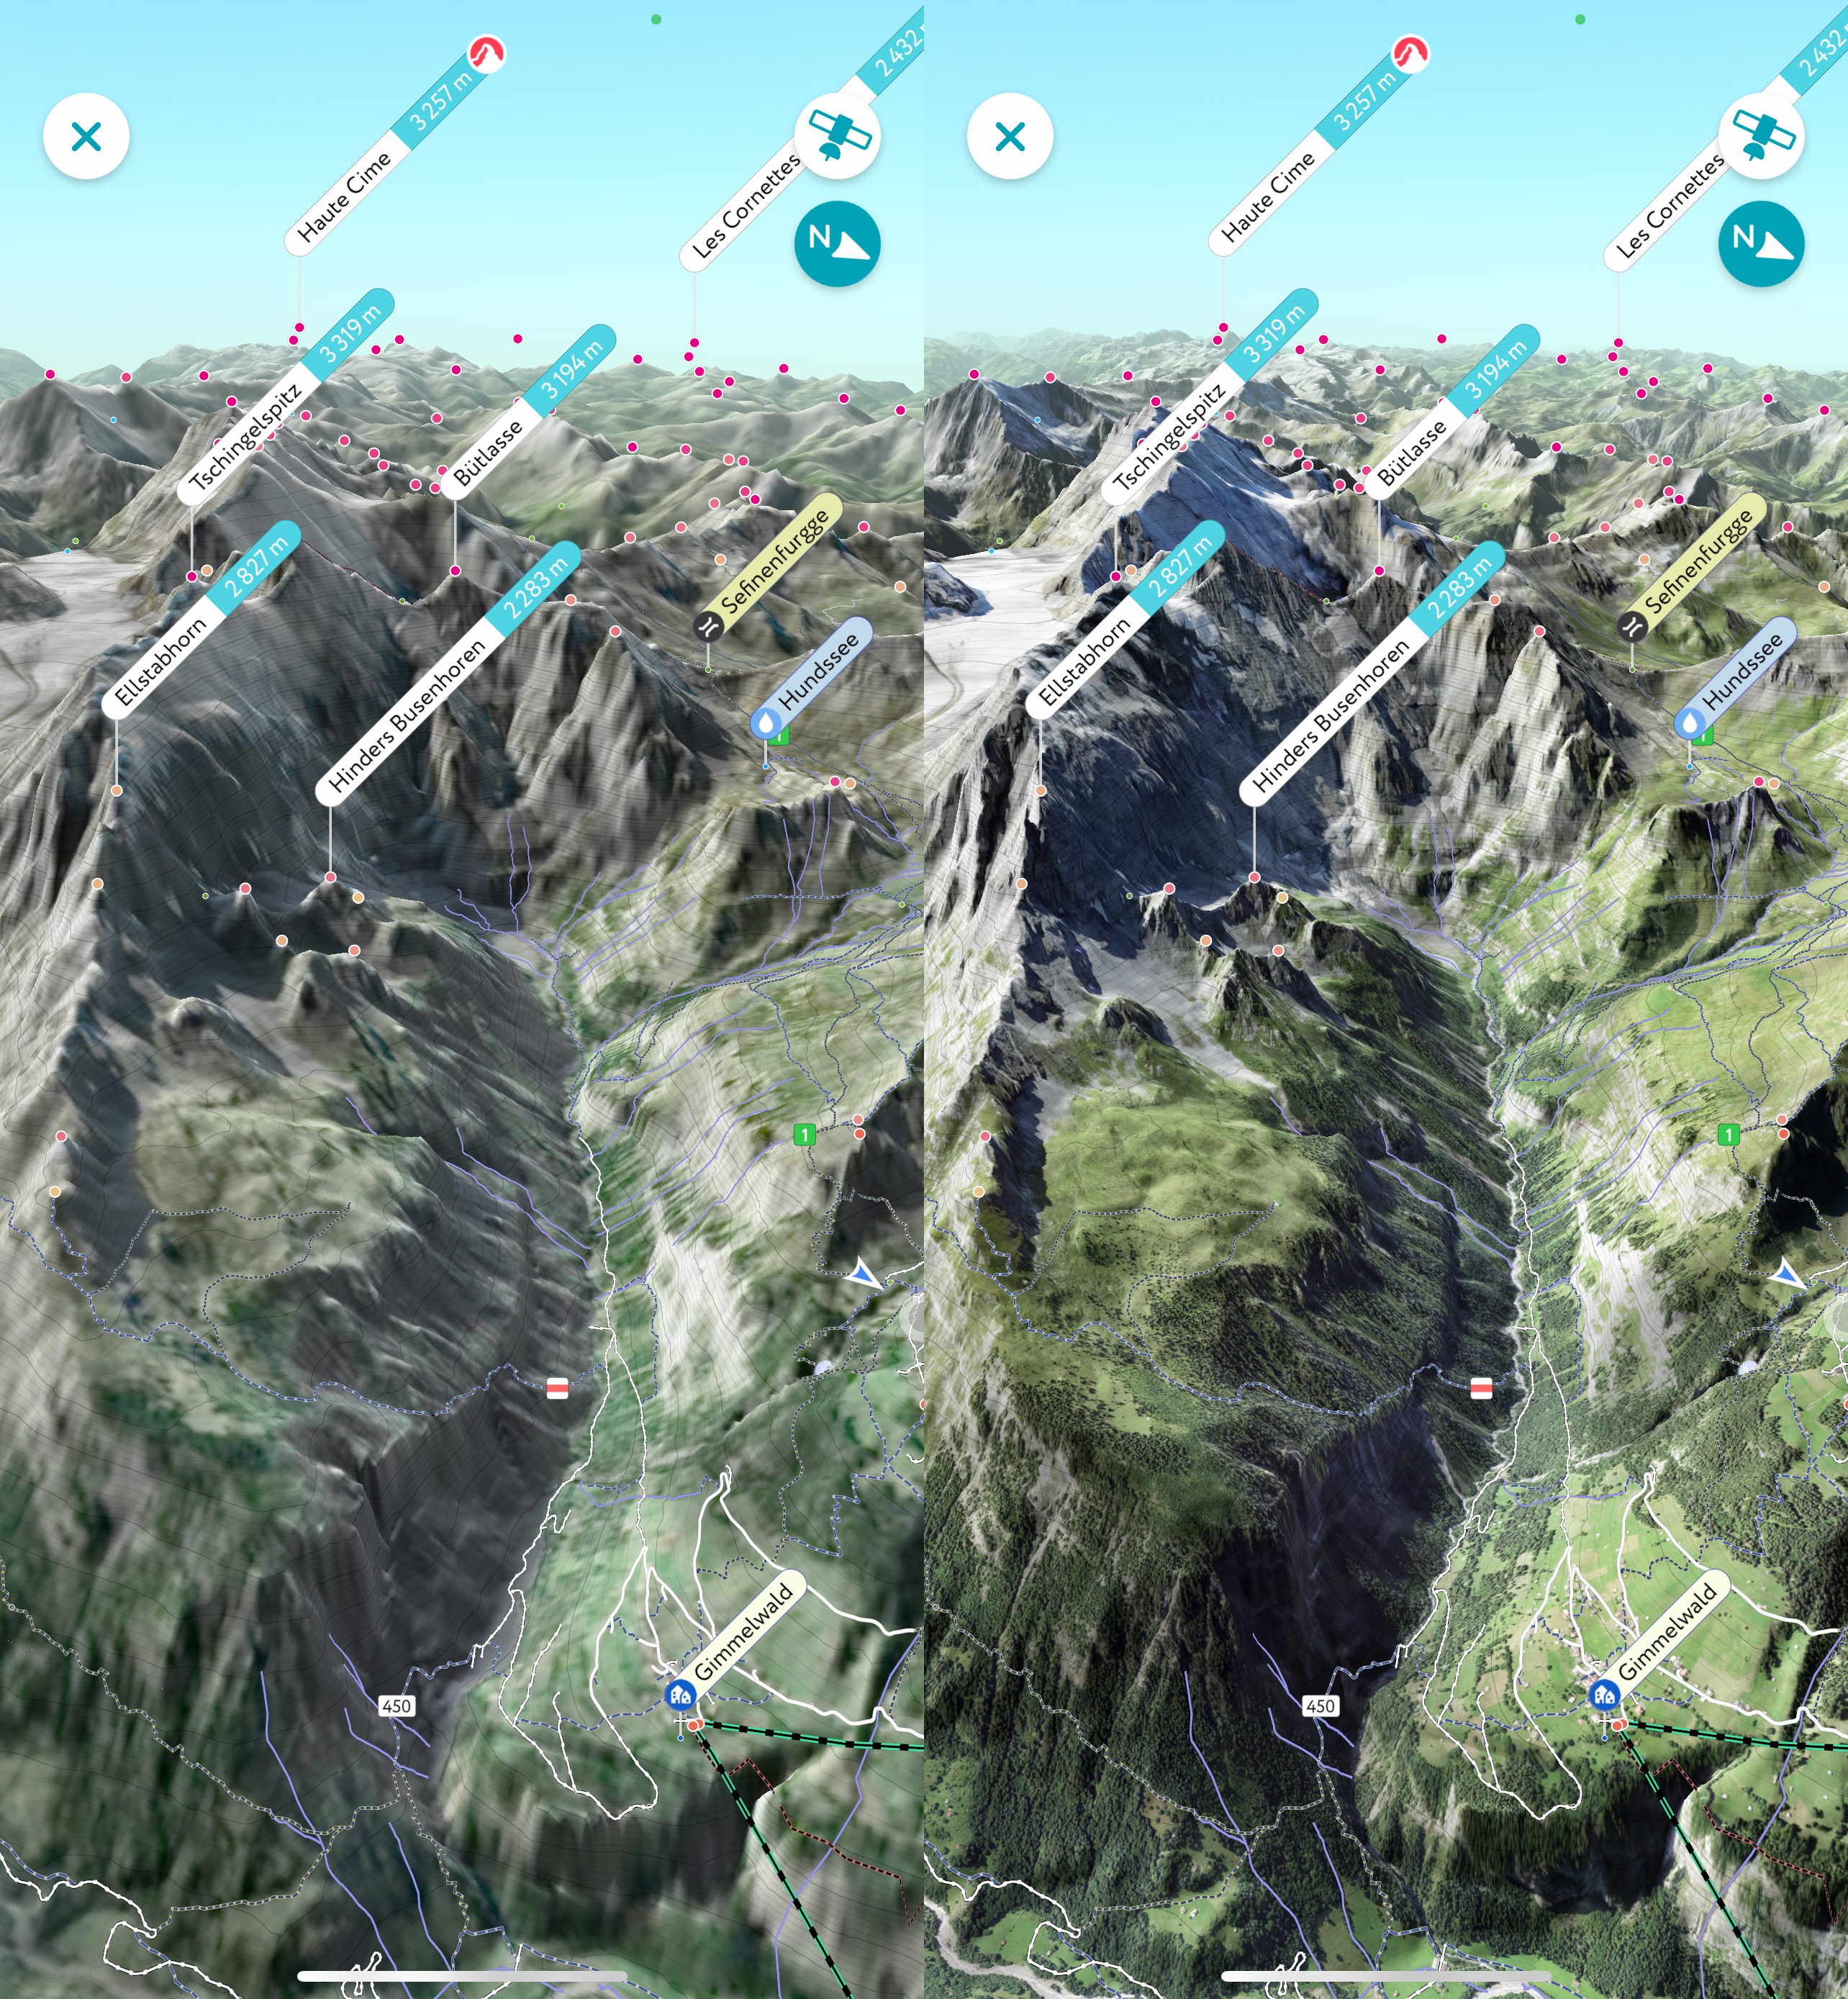 Скриншоты: старые 3D-карты (10 м на пиксель) и новые (1 м на пиксель)